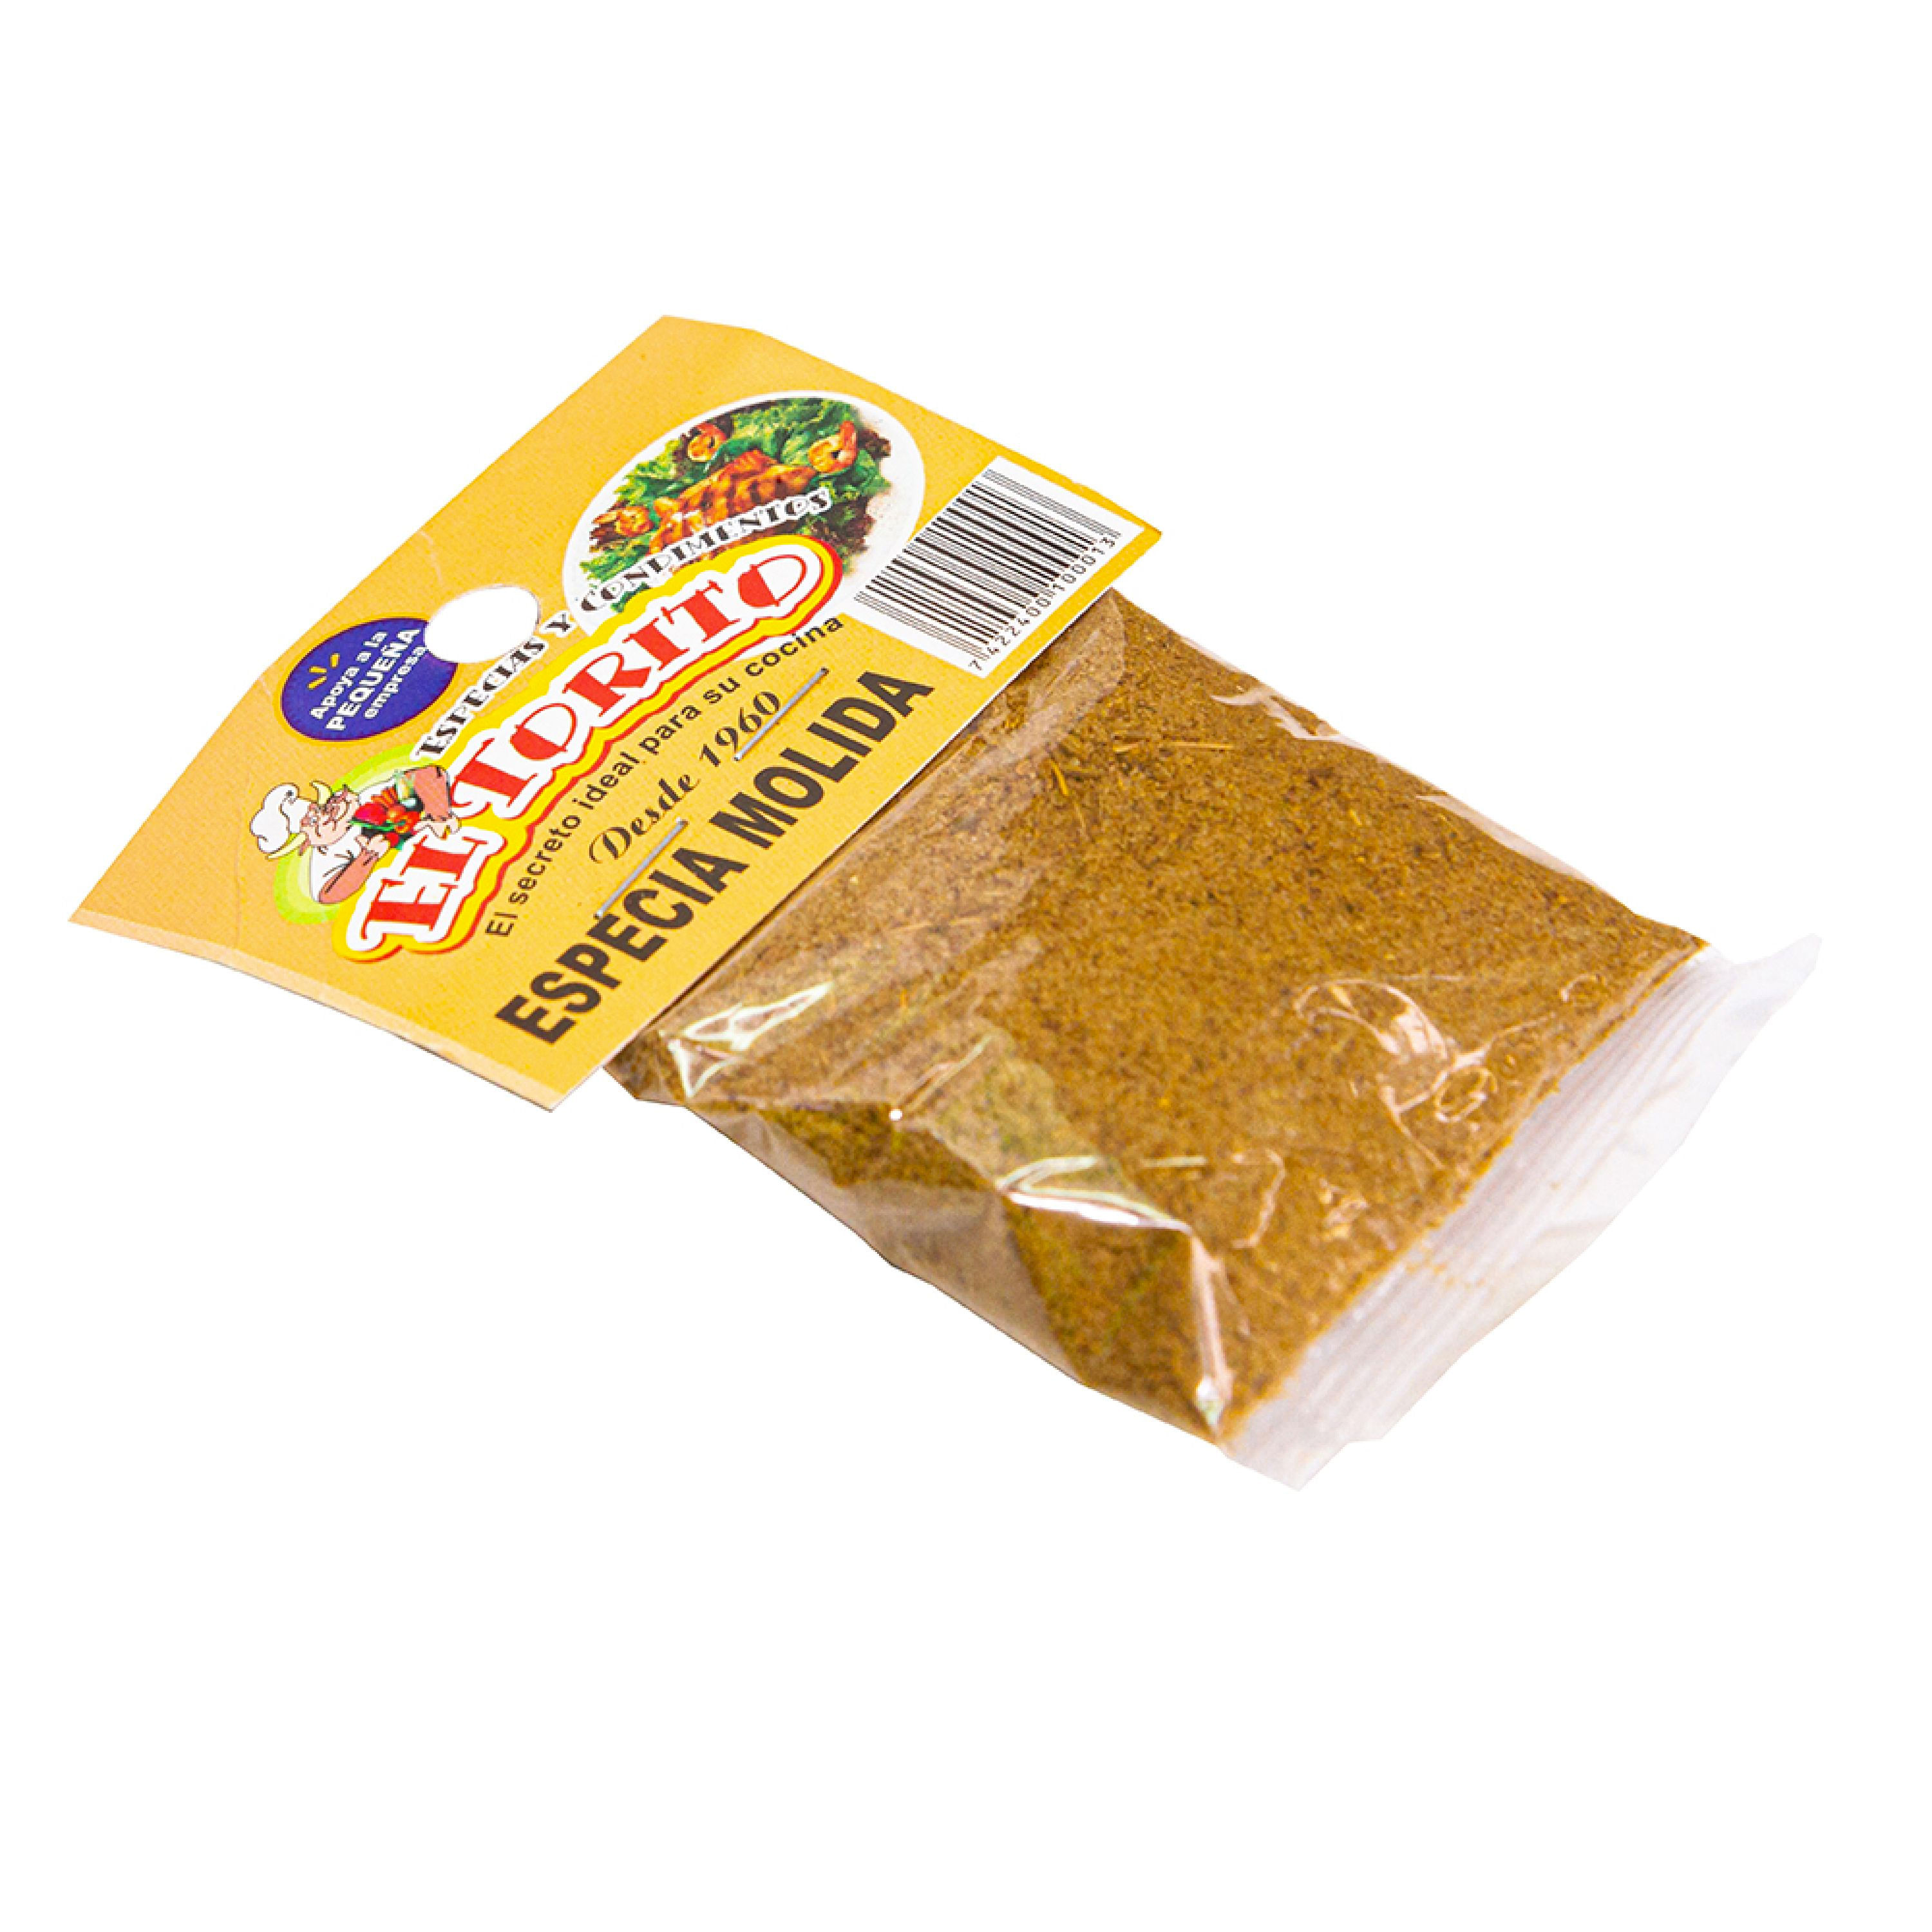  Frontier Culinary Spices - Semilla de cardamomo molida, botella  de 2.11 onzas : Comida Gourmet y Alimentos